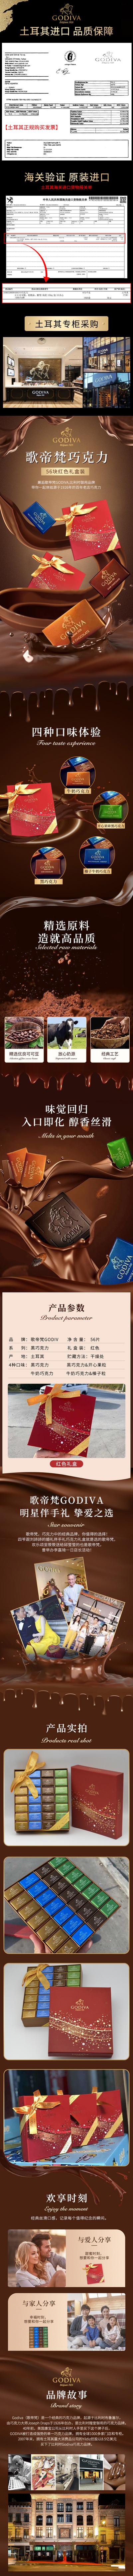 南门网 电商详情页 巧克力详情 巧克力 节日礼盒 介绍